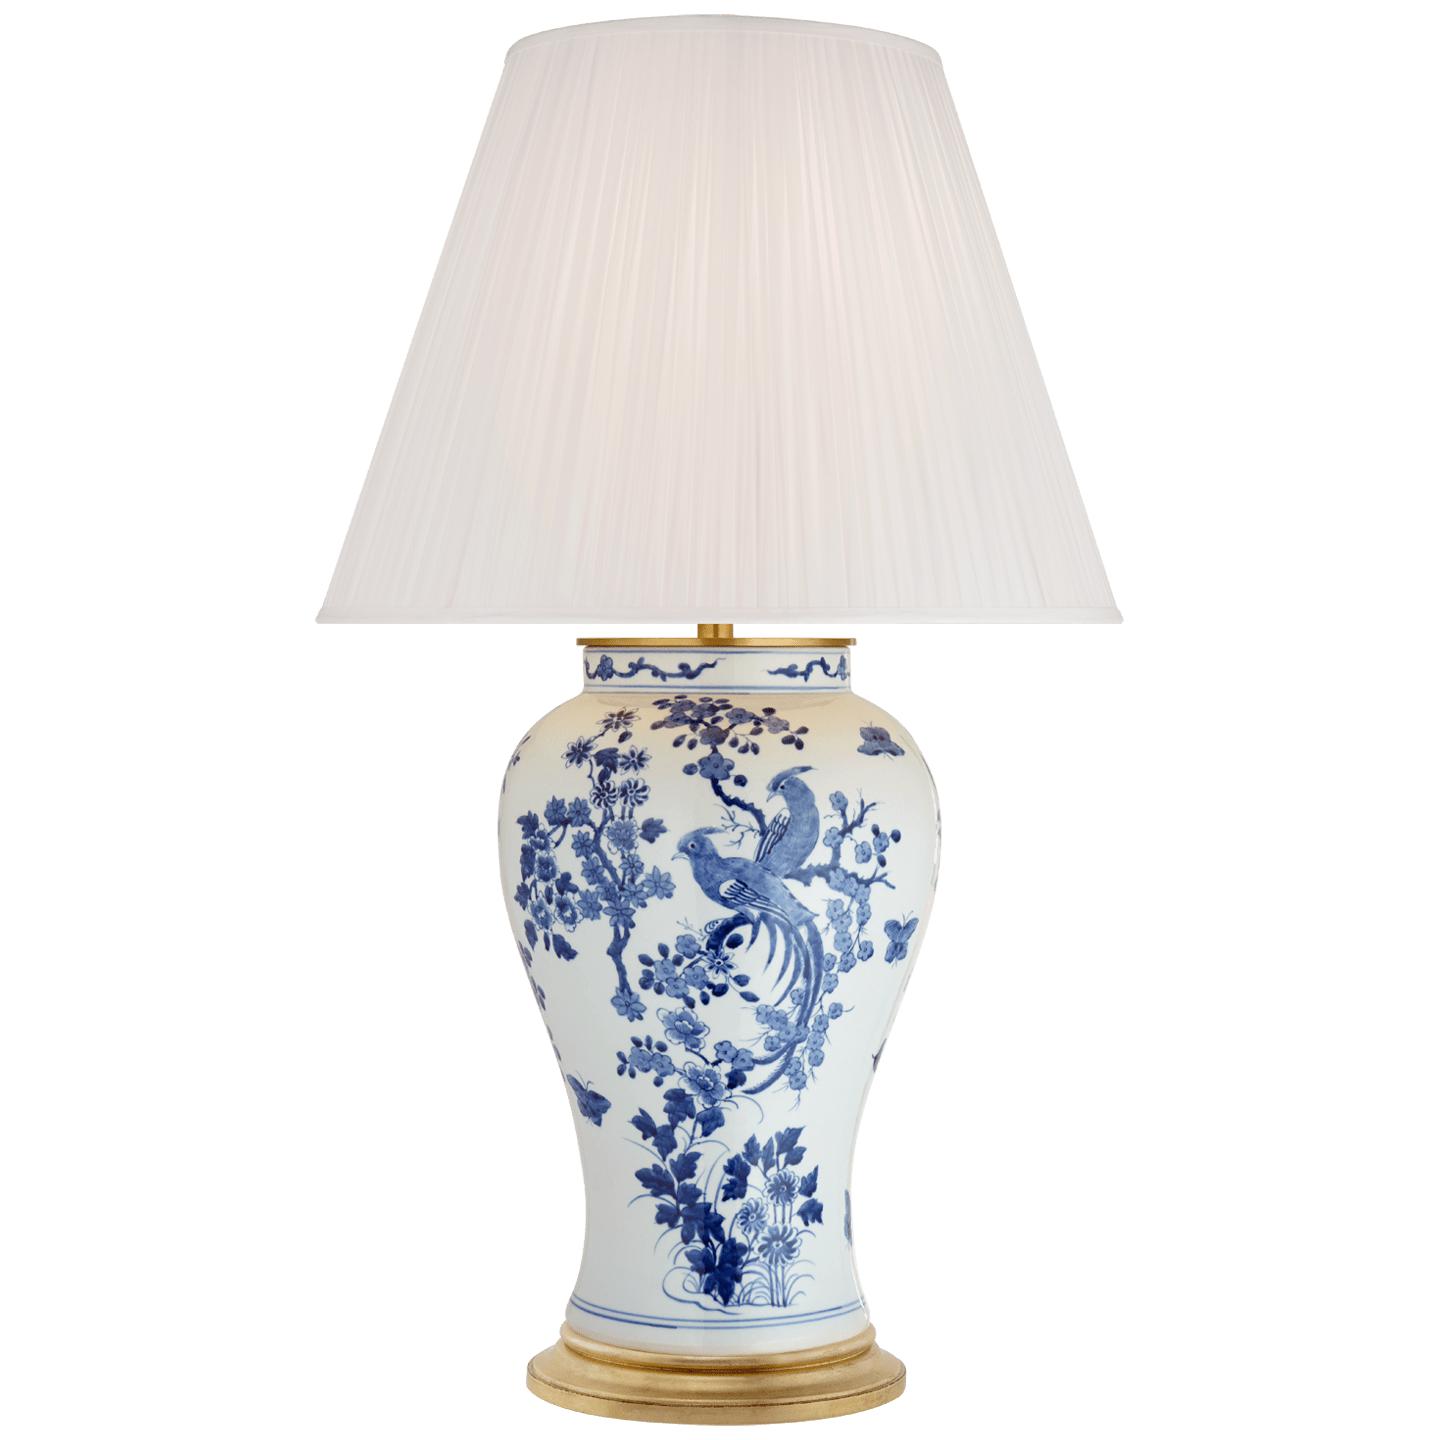 Купить Настольная лампа Blythe Large Table Lamp в интернет-магазине roooms.ru